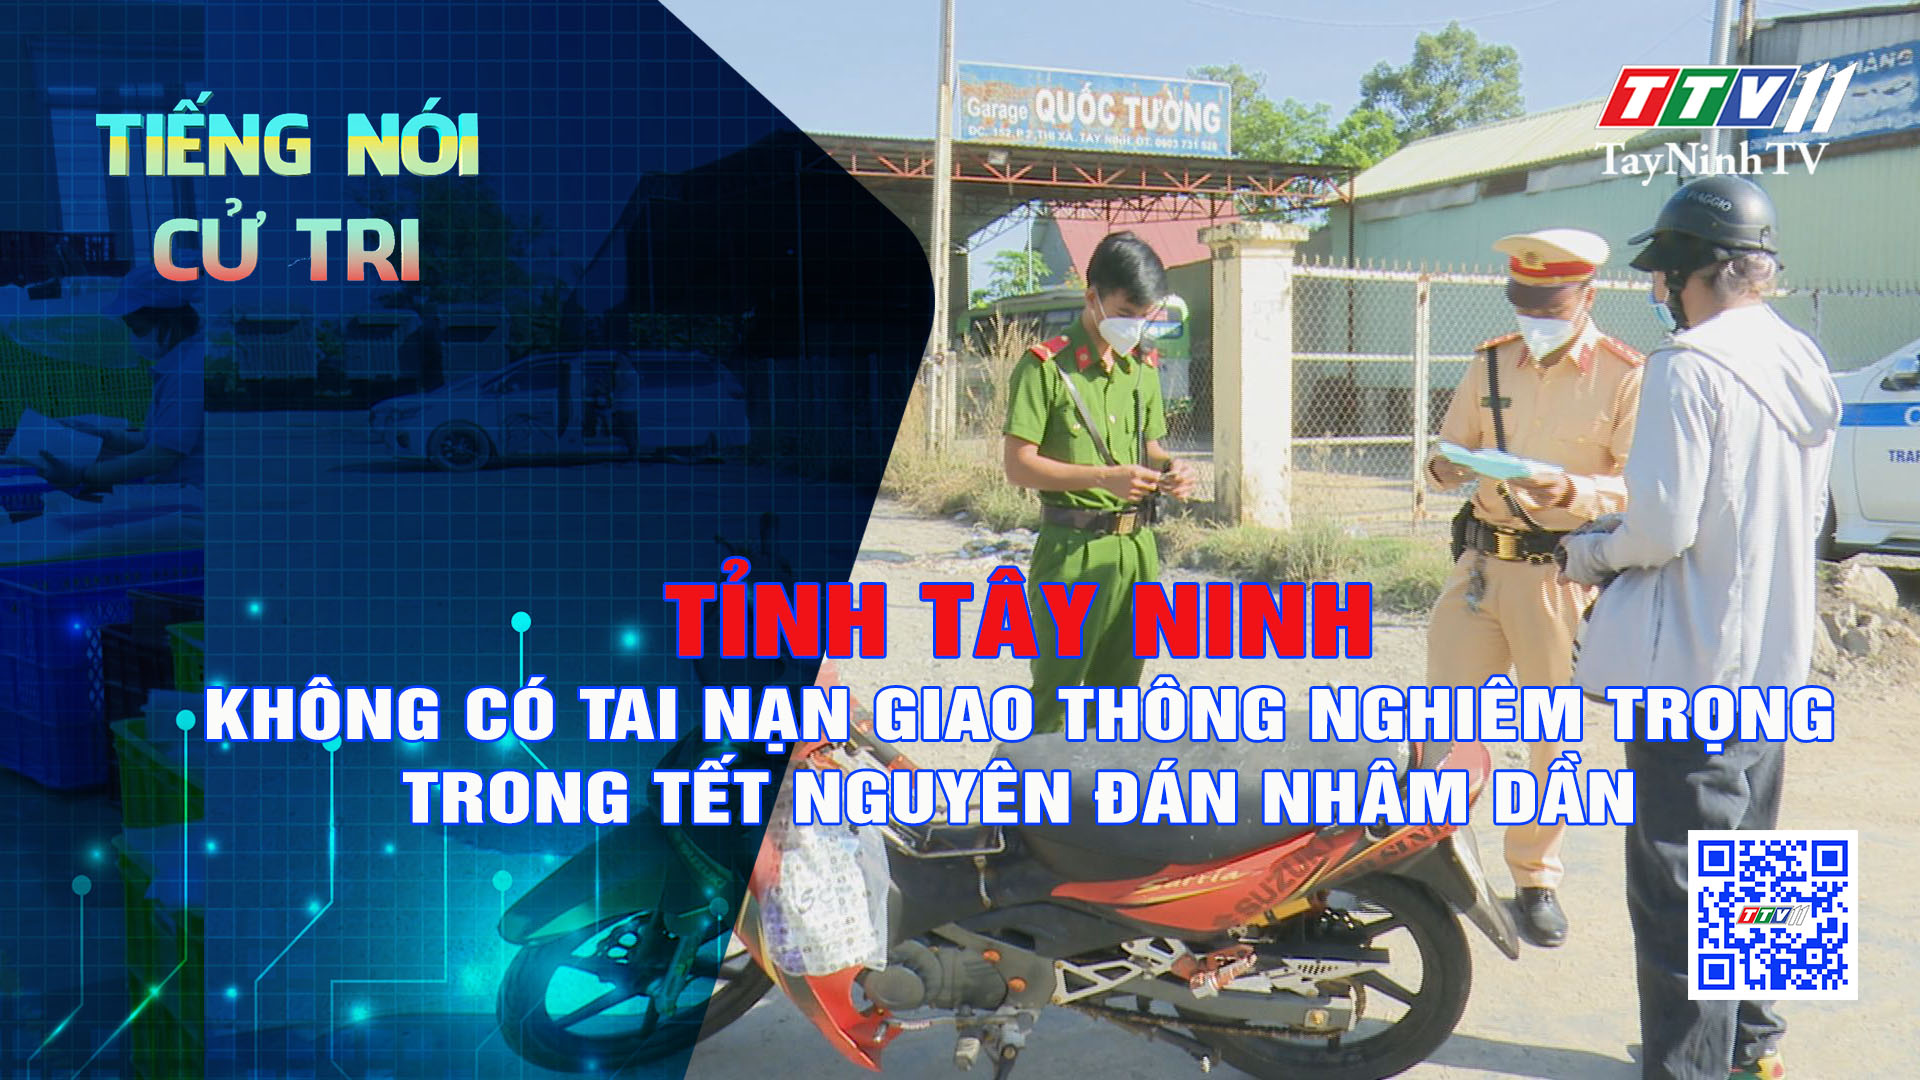 Tỉnh Tây Ninh không có tai nạn giao thông nghiêm trọng trong Tết Nguyên đán Nhâm Dần | TIẾNG NÓI CỬ TRI | TayNinhTV